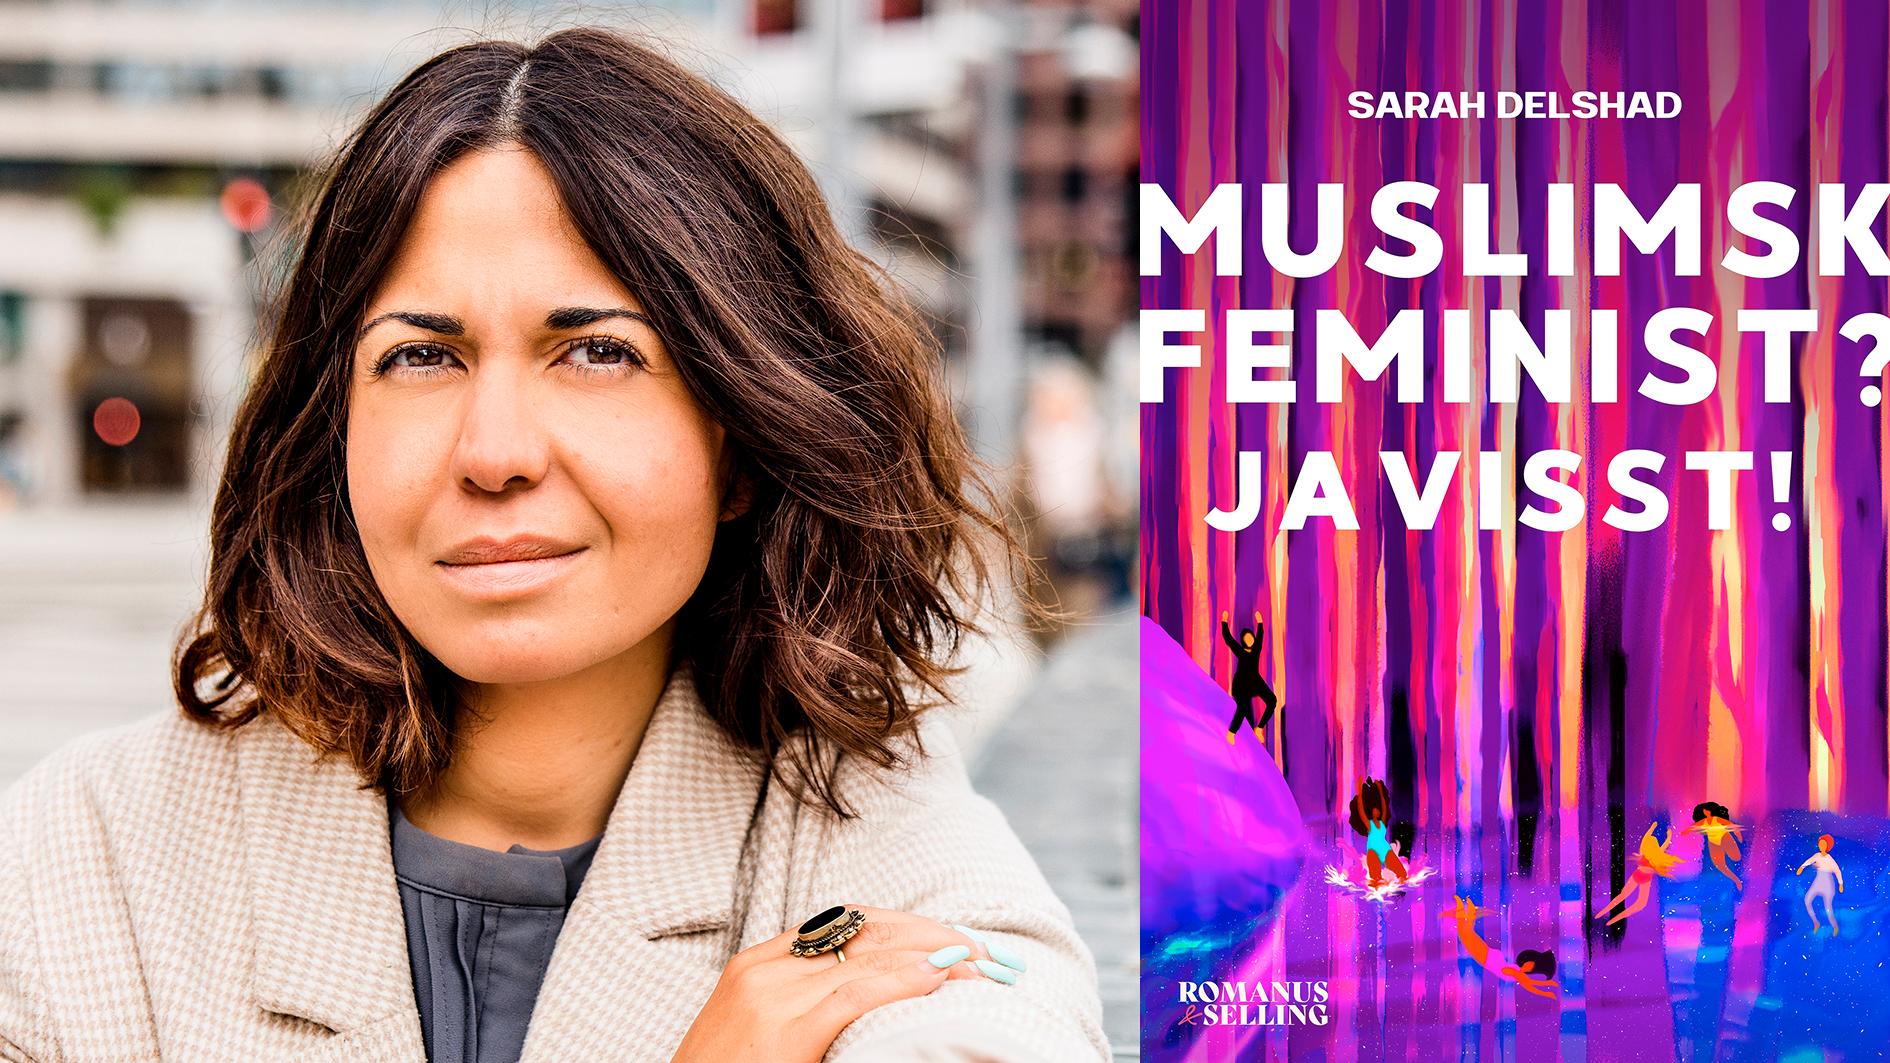 Sarah Delshad (född 1990) är verksam som journalist, inriktad på frågor som rör muslimsk identitet och feminism. ”Muslimsk feminist? Javisst!” är hennes första bok.